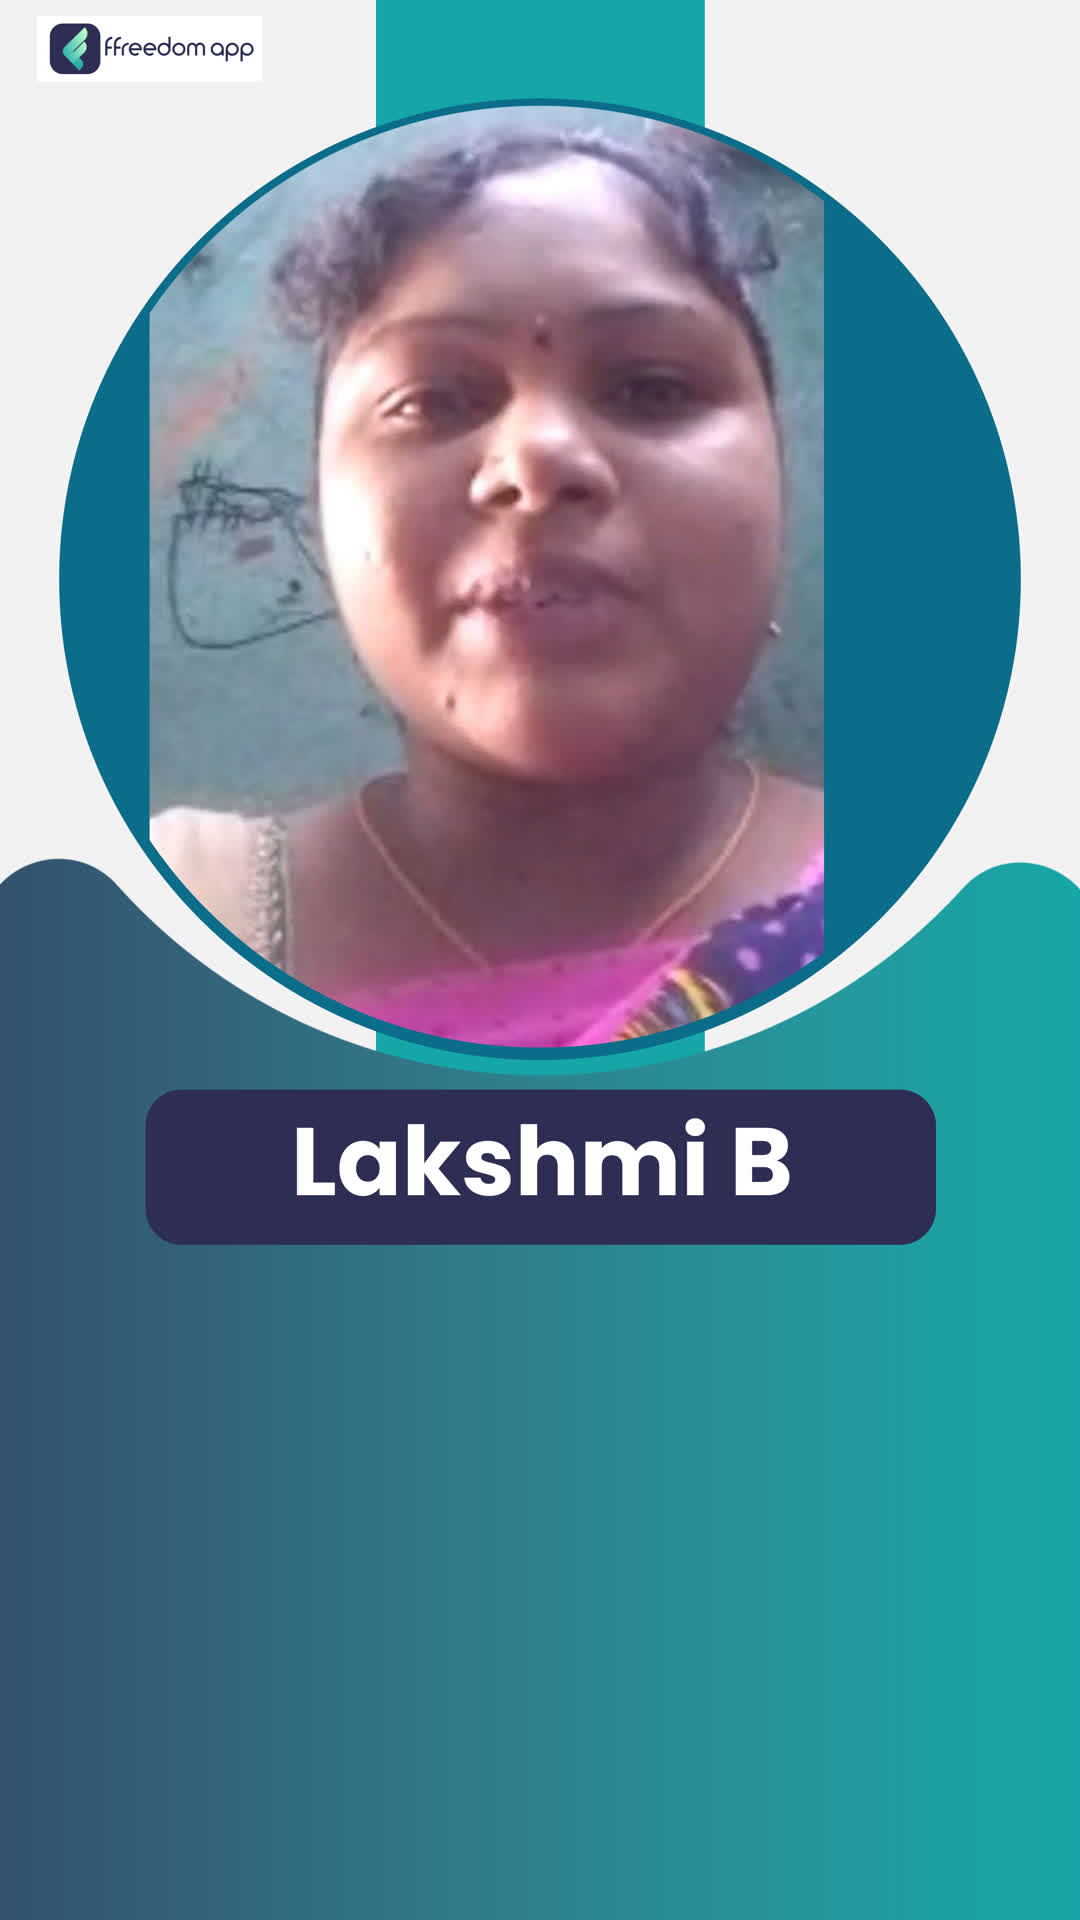 lakshmi's Honest Review of ffreedom app - Thirupathi ,Andhra Pradesh